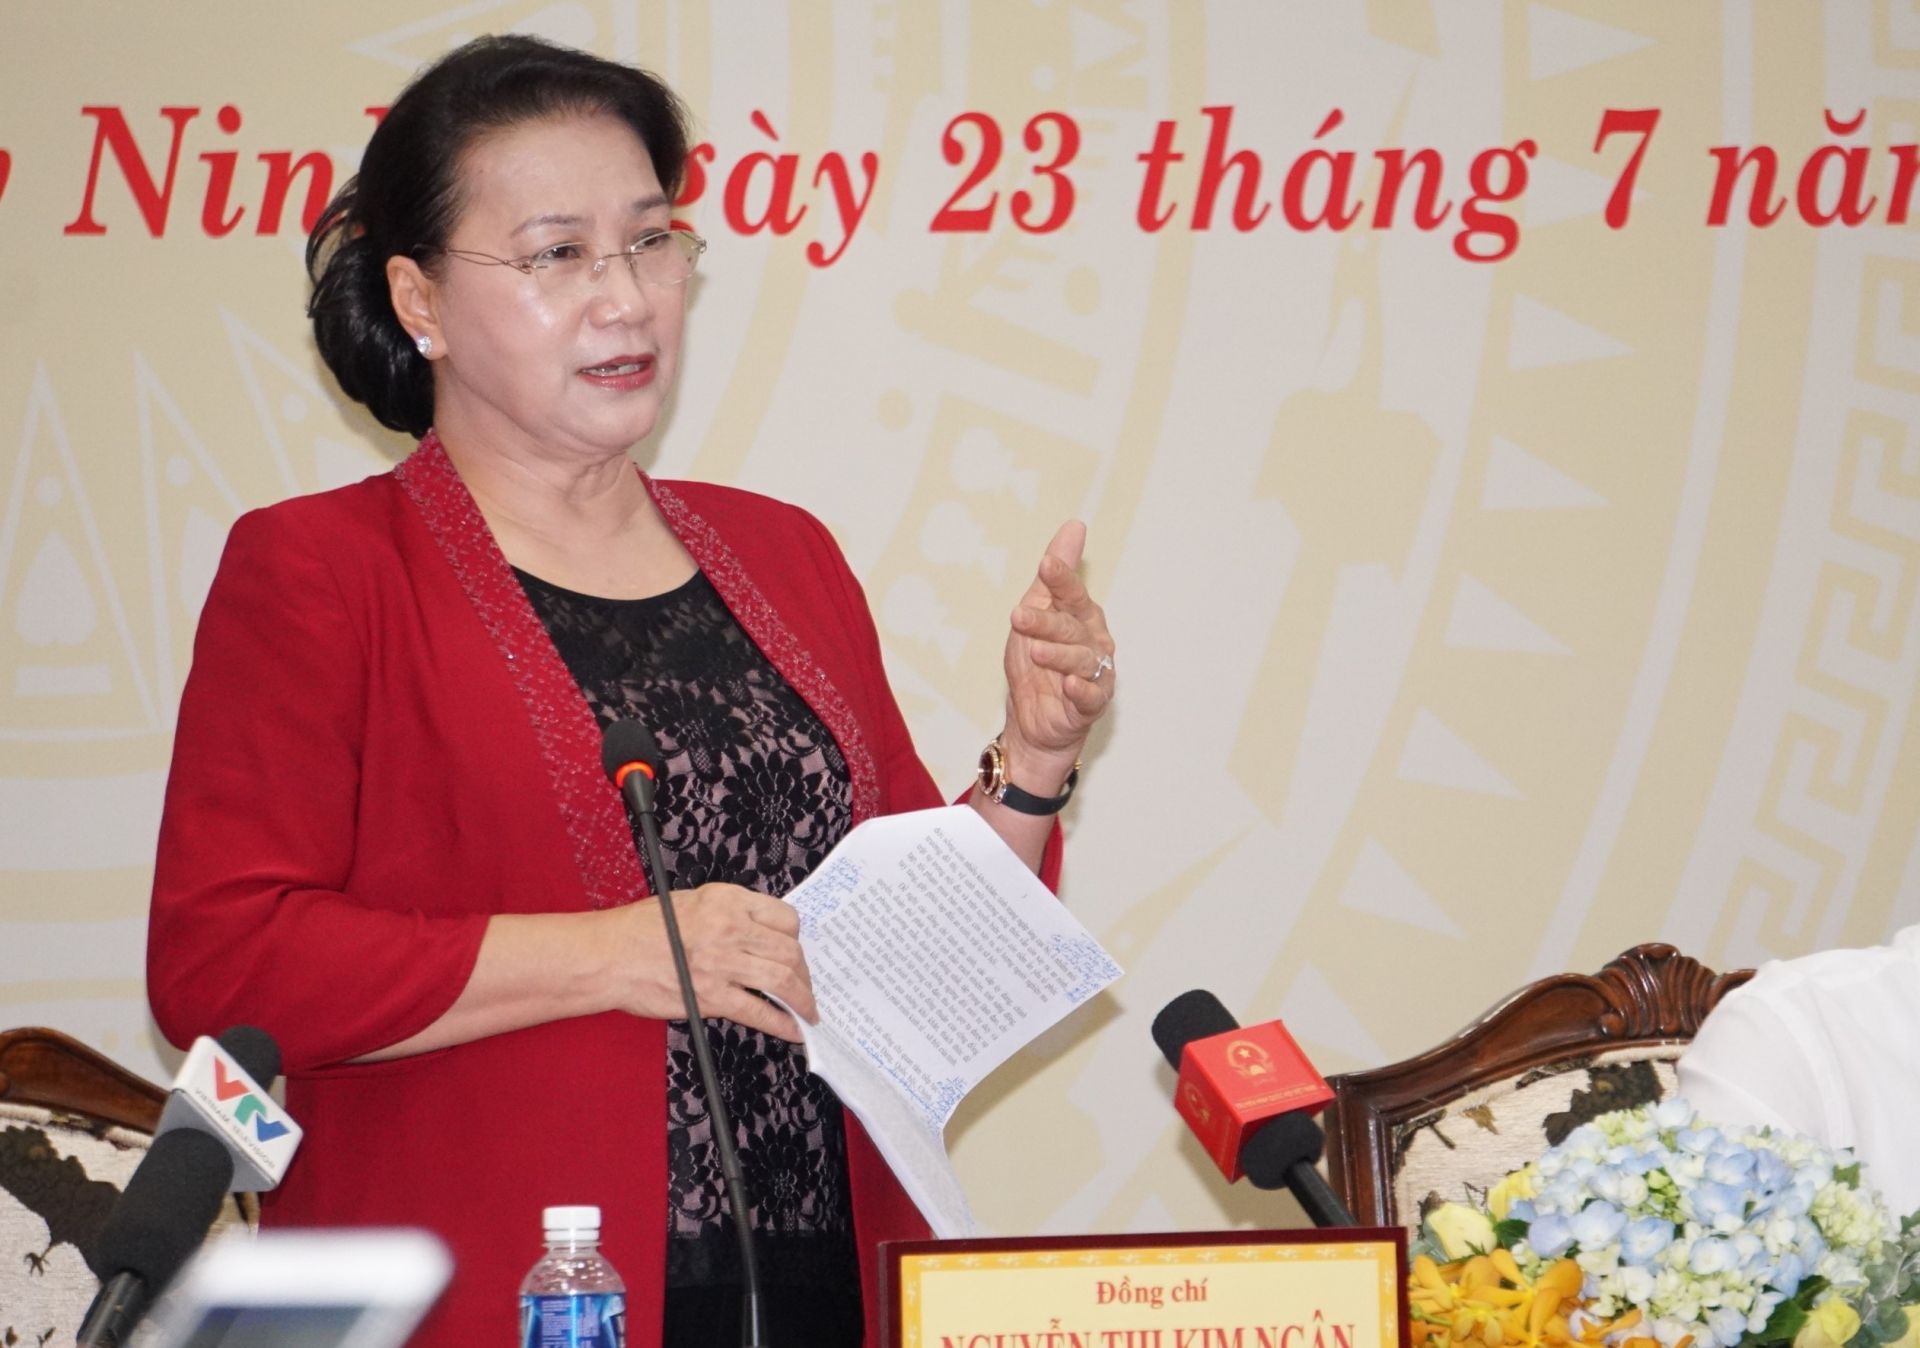 Điểm báo in Tây Ninh ngày 24.07.2019